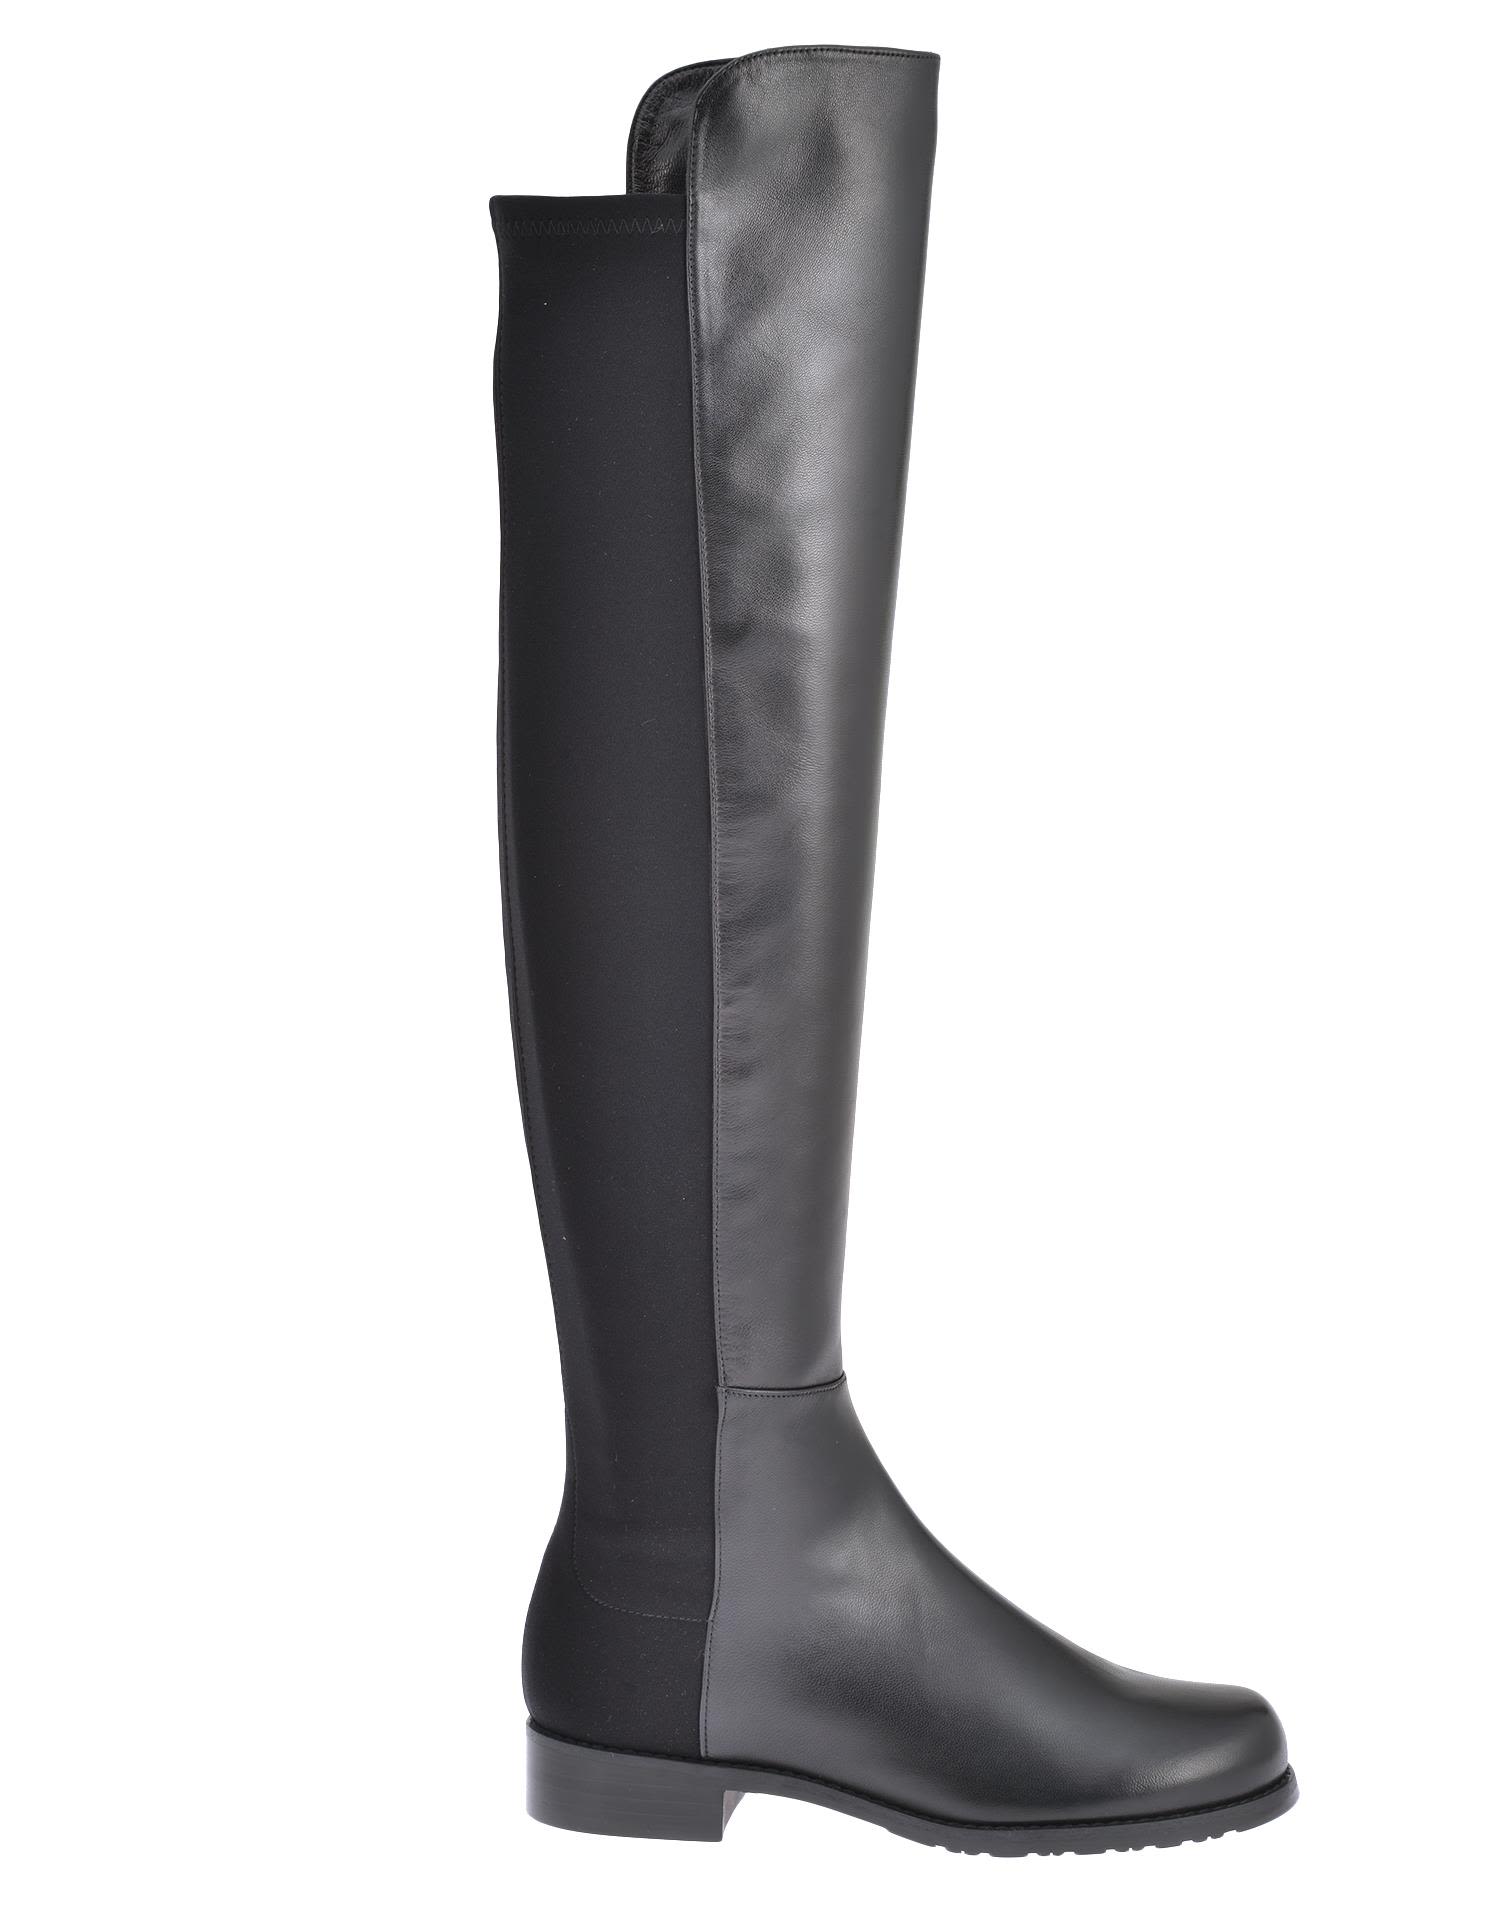 STUART WEITZMAN Color Block Over-The-Knee Boots, Black | ModeSens